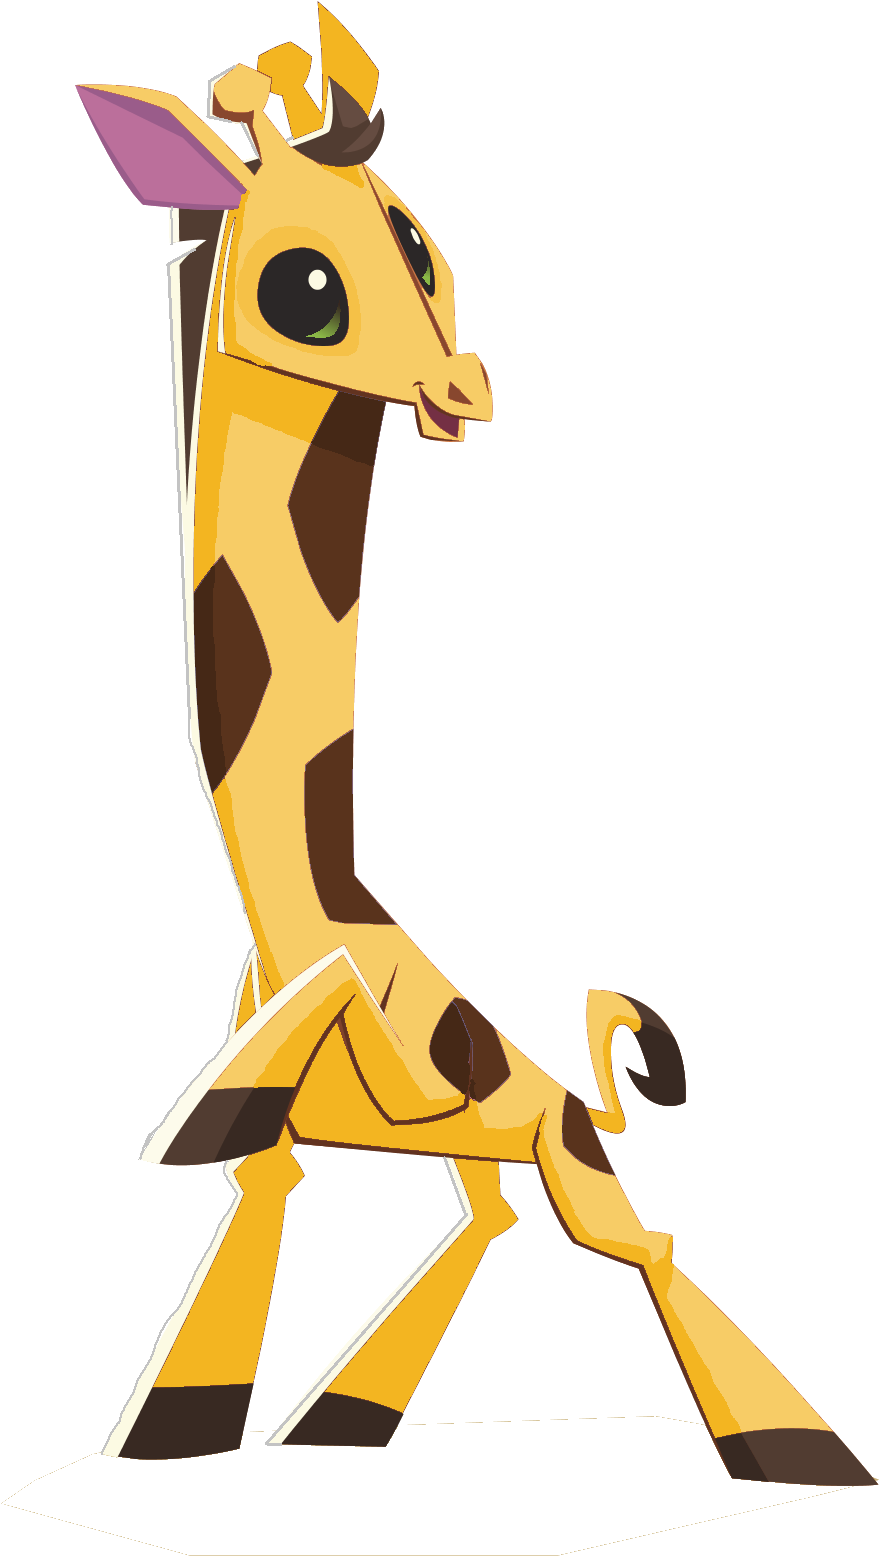 Animated Giraffe Character Sitting